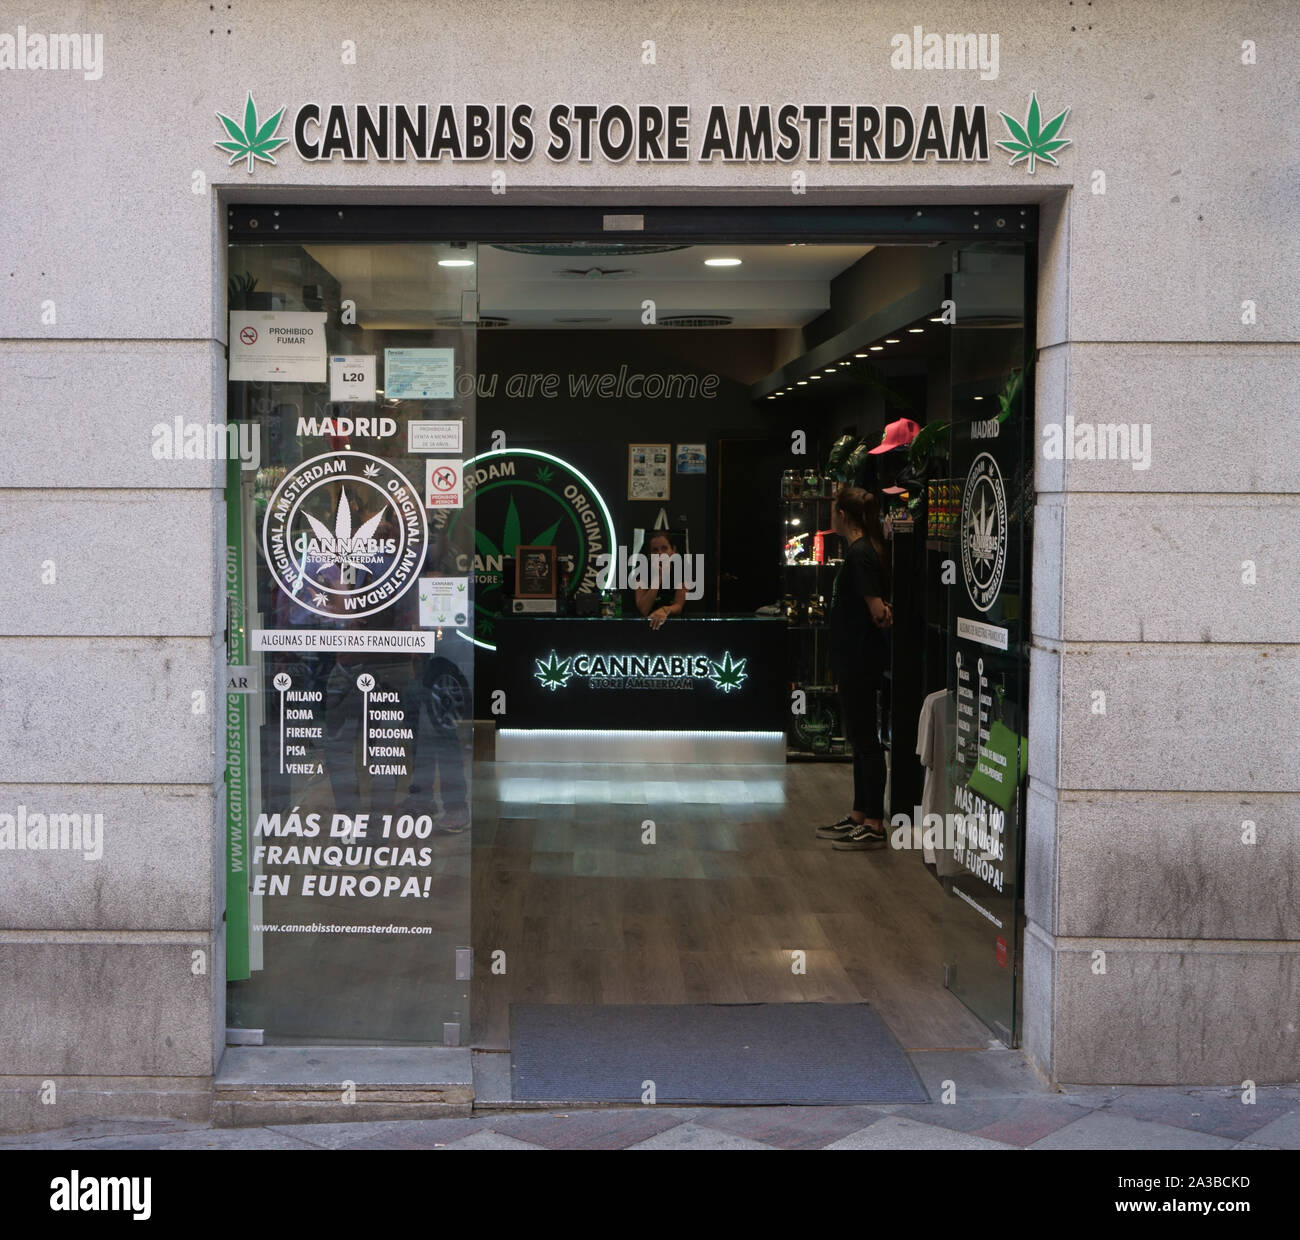 MADRID, Spanien - 24. SEPTEMBER 2019: Cannabis Store Amsterdam, Niederlassung in Madrid, Calle de la Montera, Spanien. Stockfoto